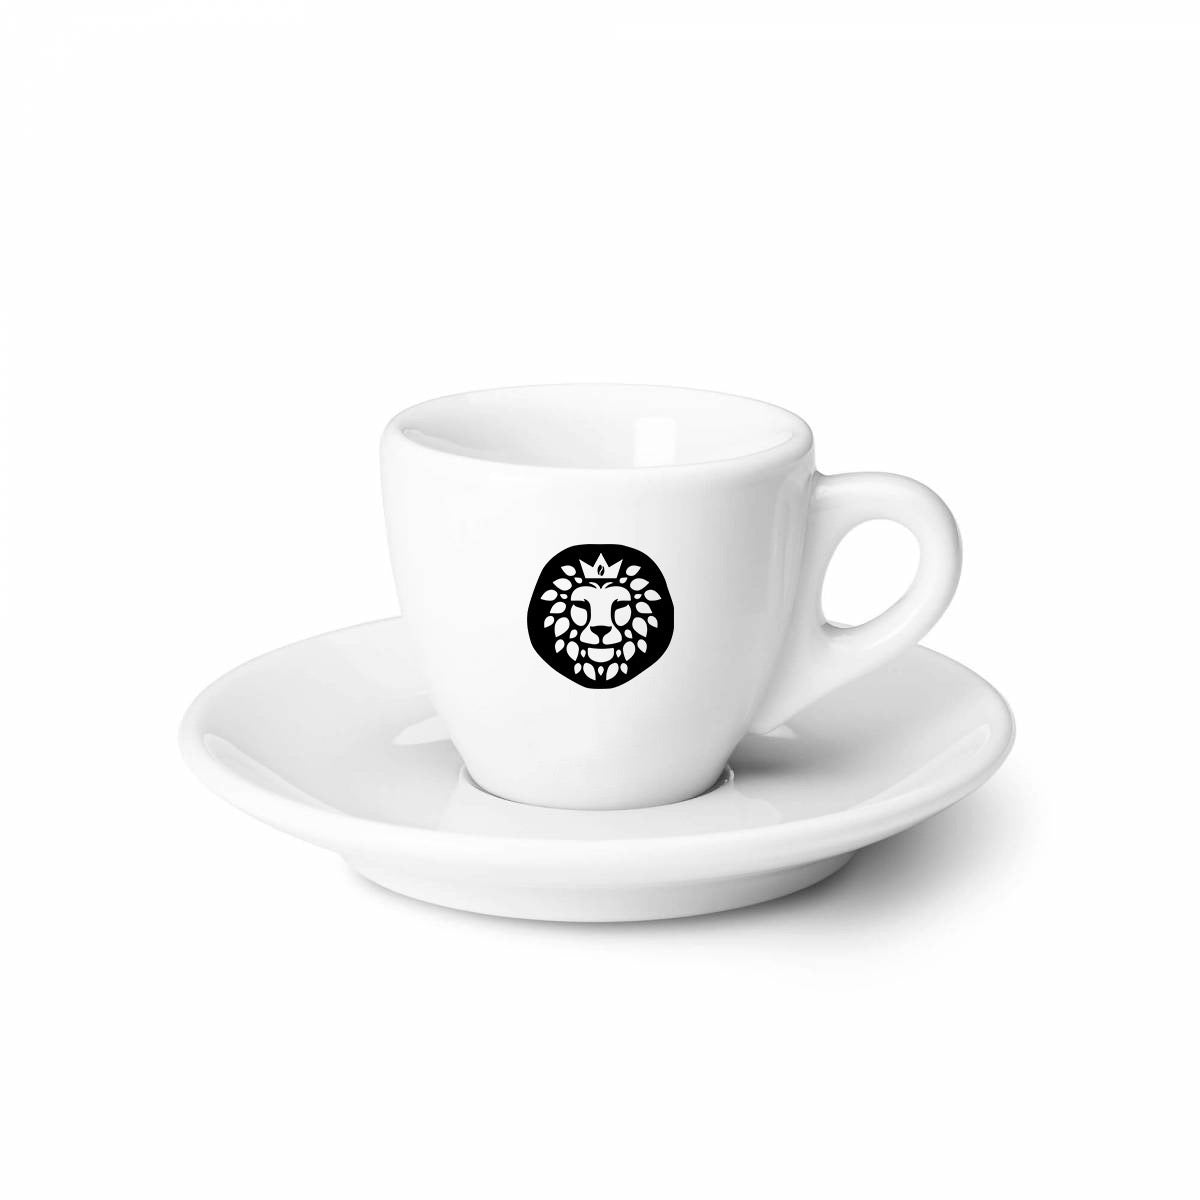 Barista Royal Espresso Tasse aus Keramik - Made in Italy